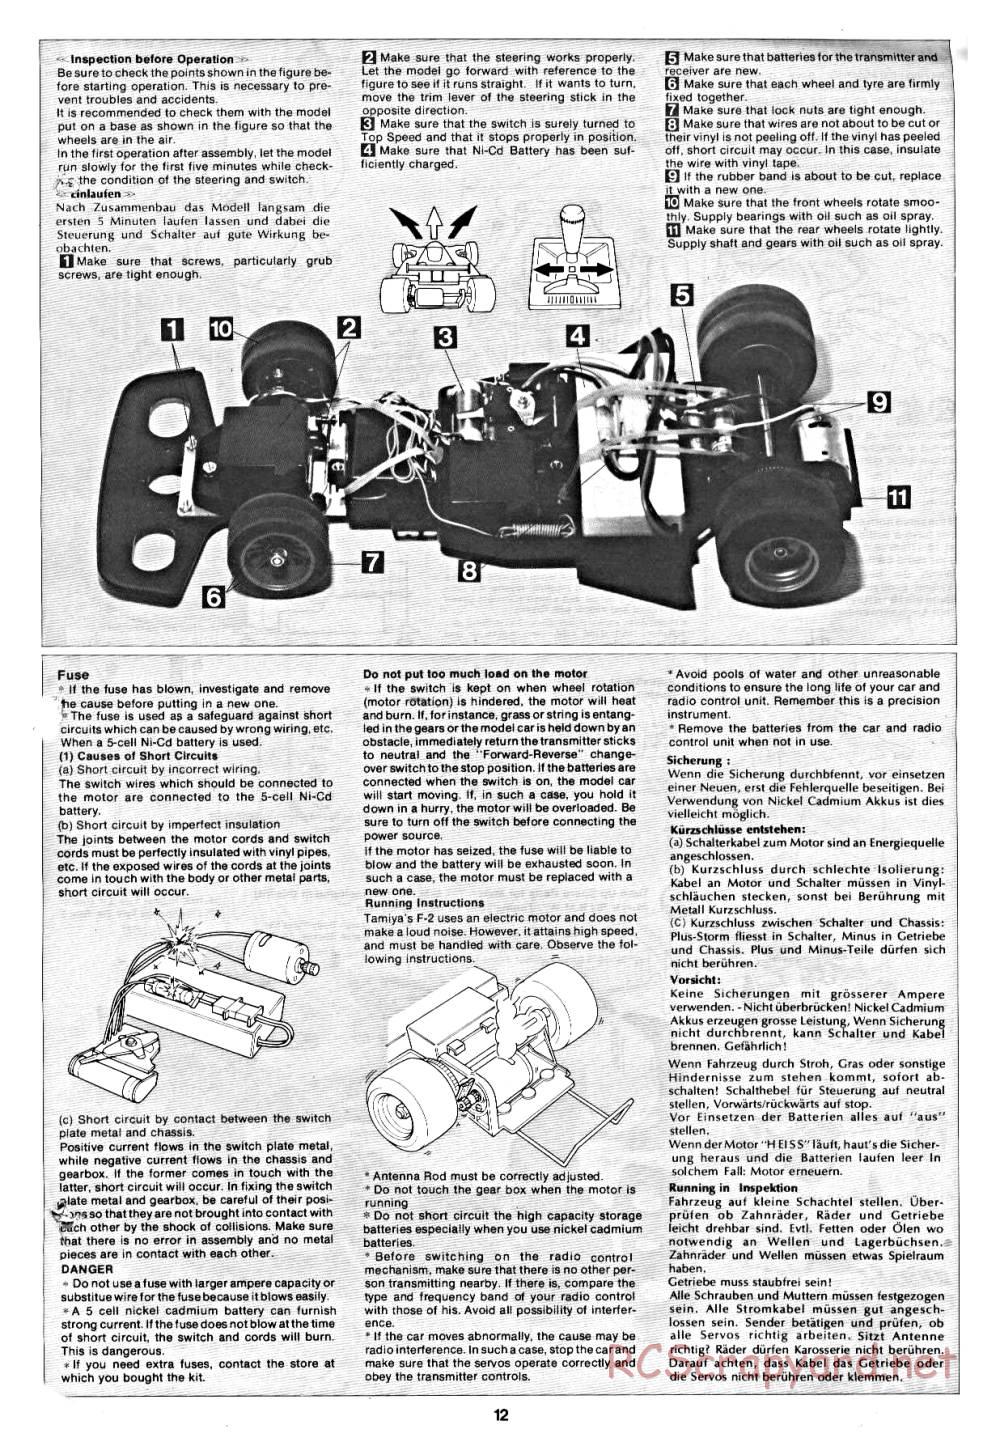 Tamiya - March 782 BMW (F2) - 58013 - Manual - Page 12